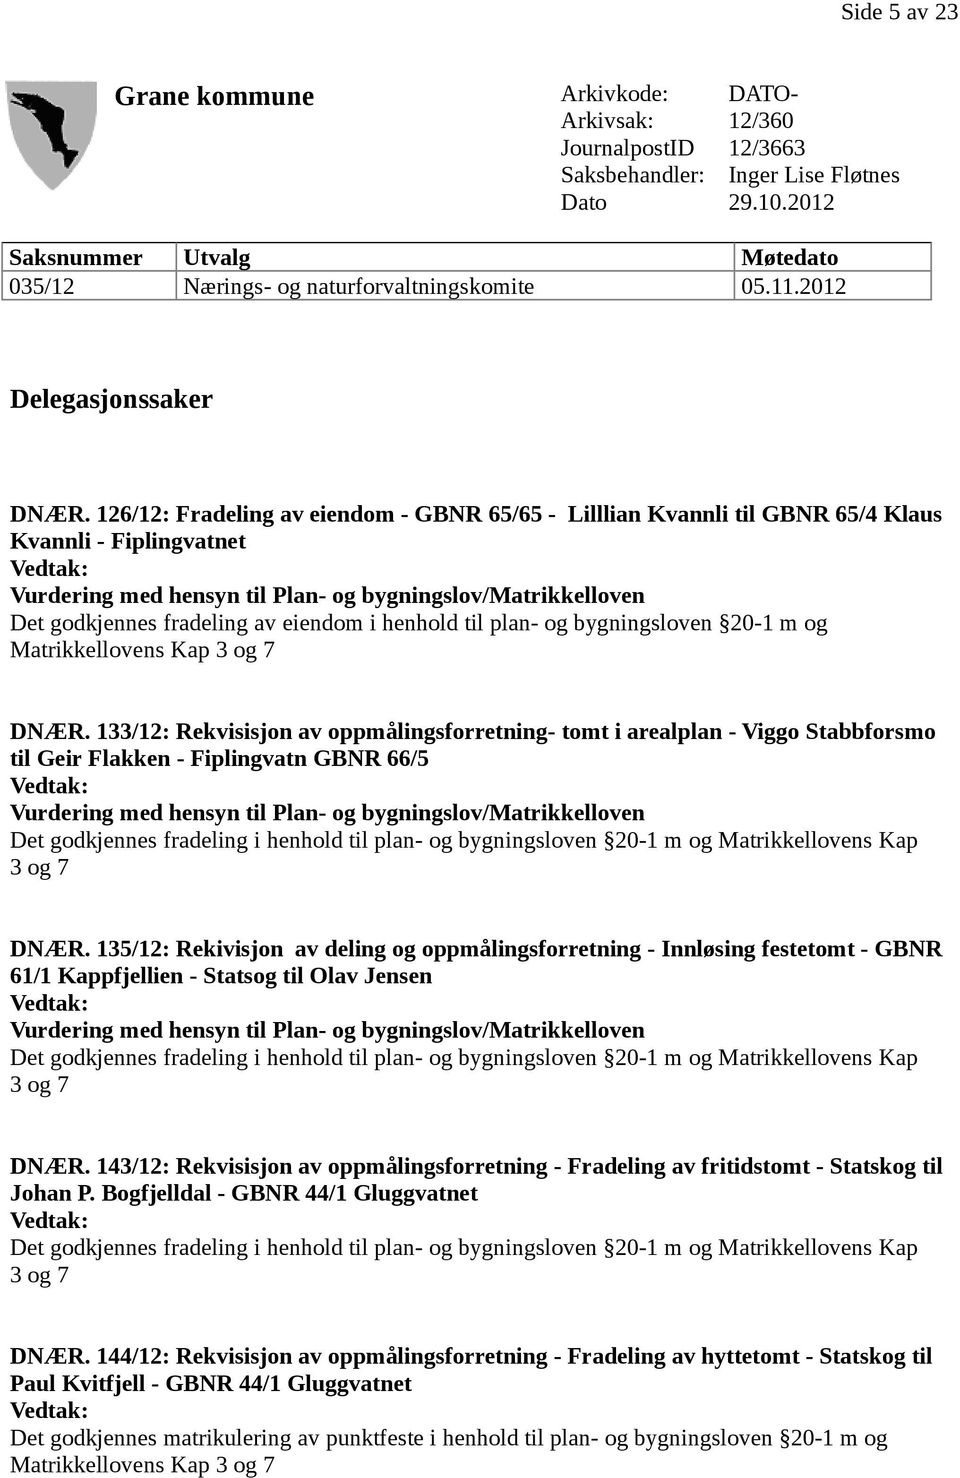 126/12: Fradeling av eiendom - GBNR 65/65 - Lilllian Kvannli til GBNR 65/4 Klaus Kvannli - Fiplingvatnet Vurdering med hensyn til Plan- og bygningslov/matrikkelloven Det godkjennes fradeling av